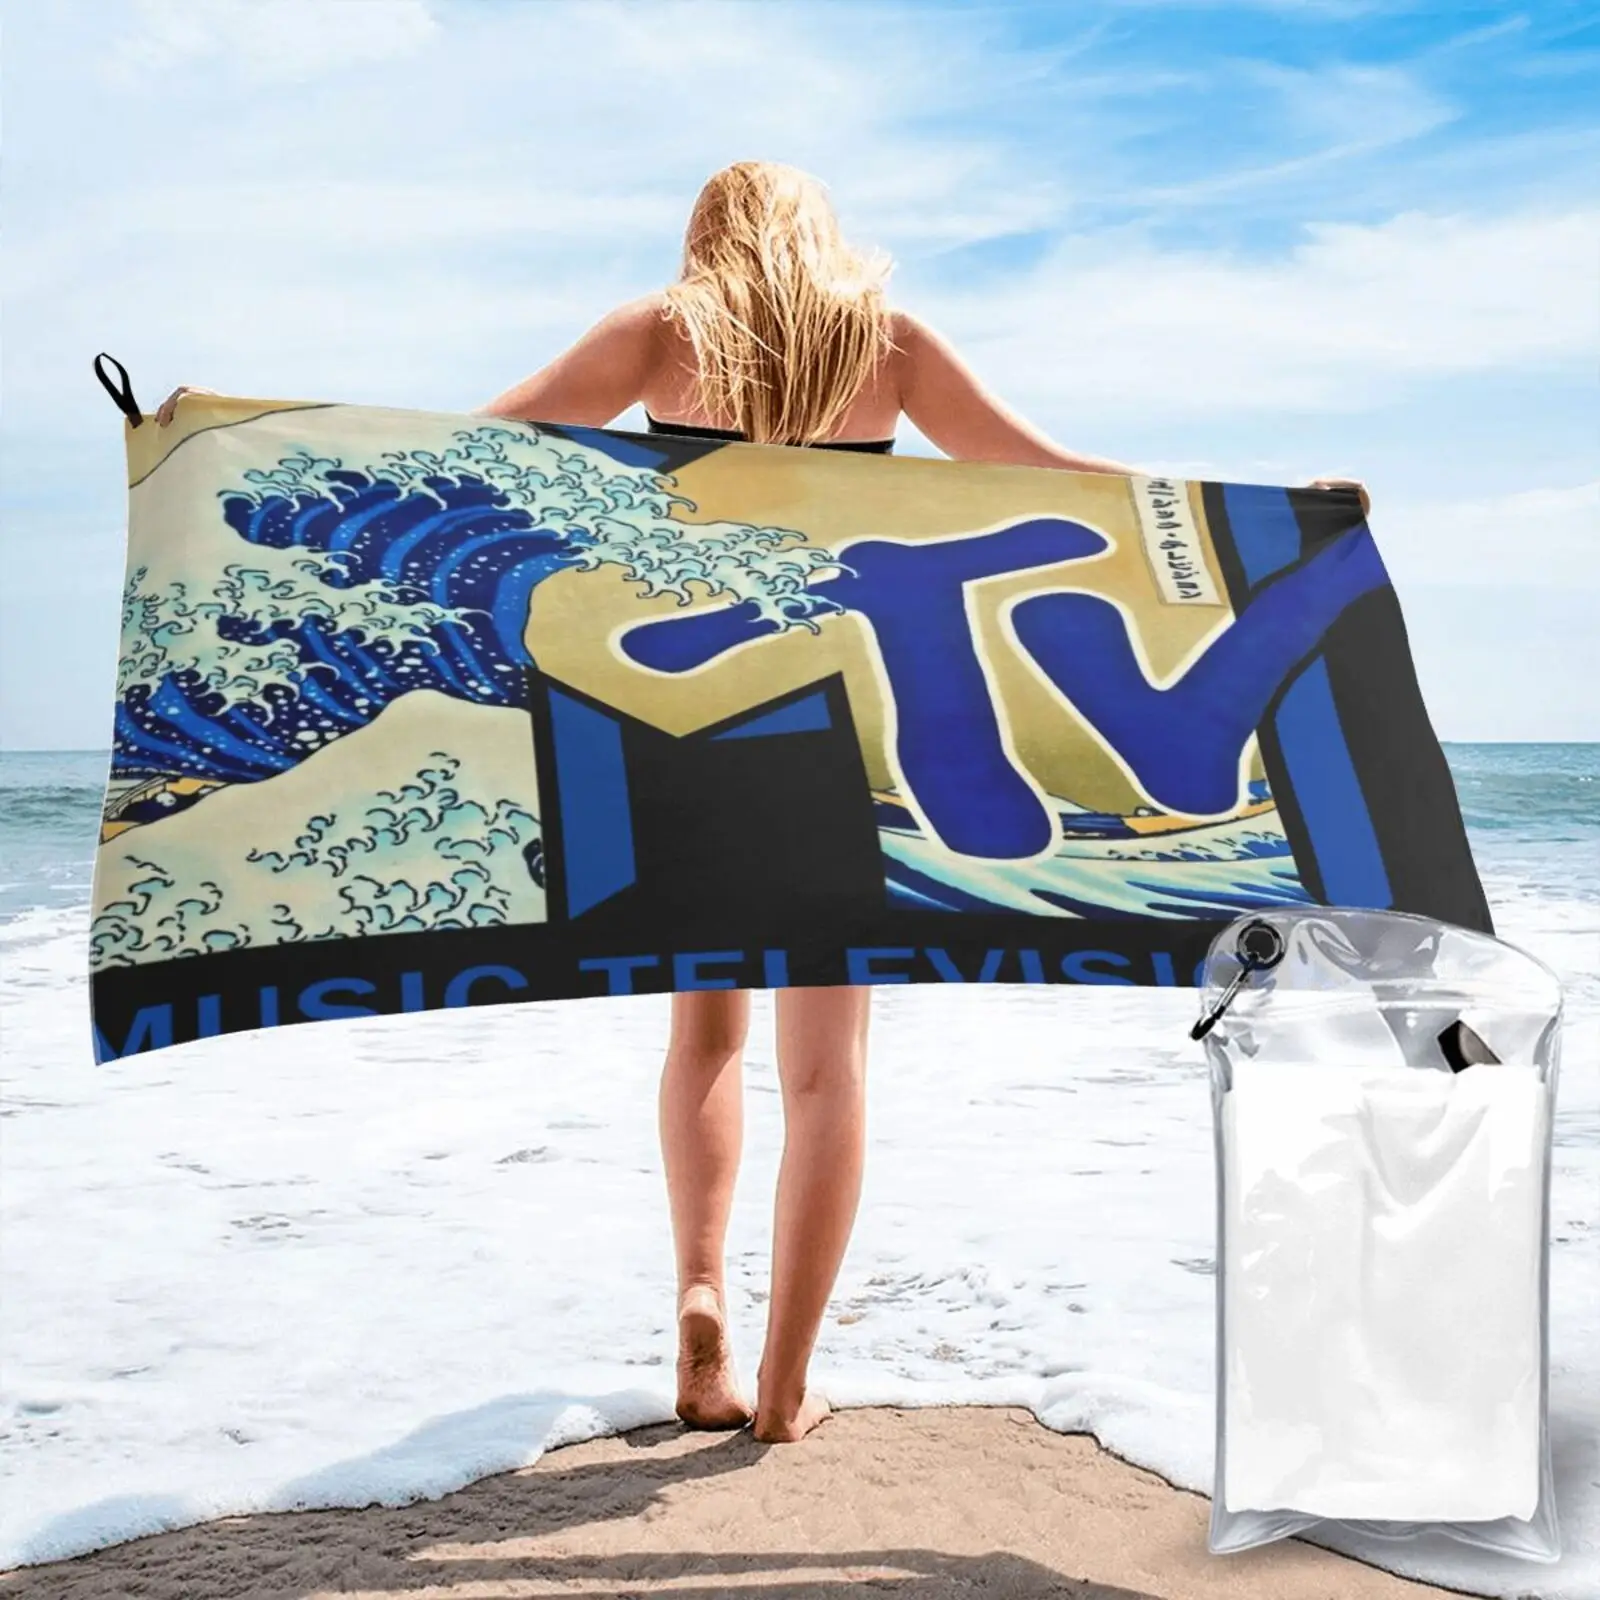 

Лицензионное пляжное полотенце Mtv Wave 96 301 159, полотенце для рук, кухонное полотенце, пляжное полотенце s, Большое пляжное полотенце, пляжный ко...